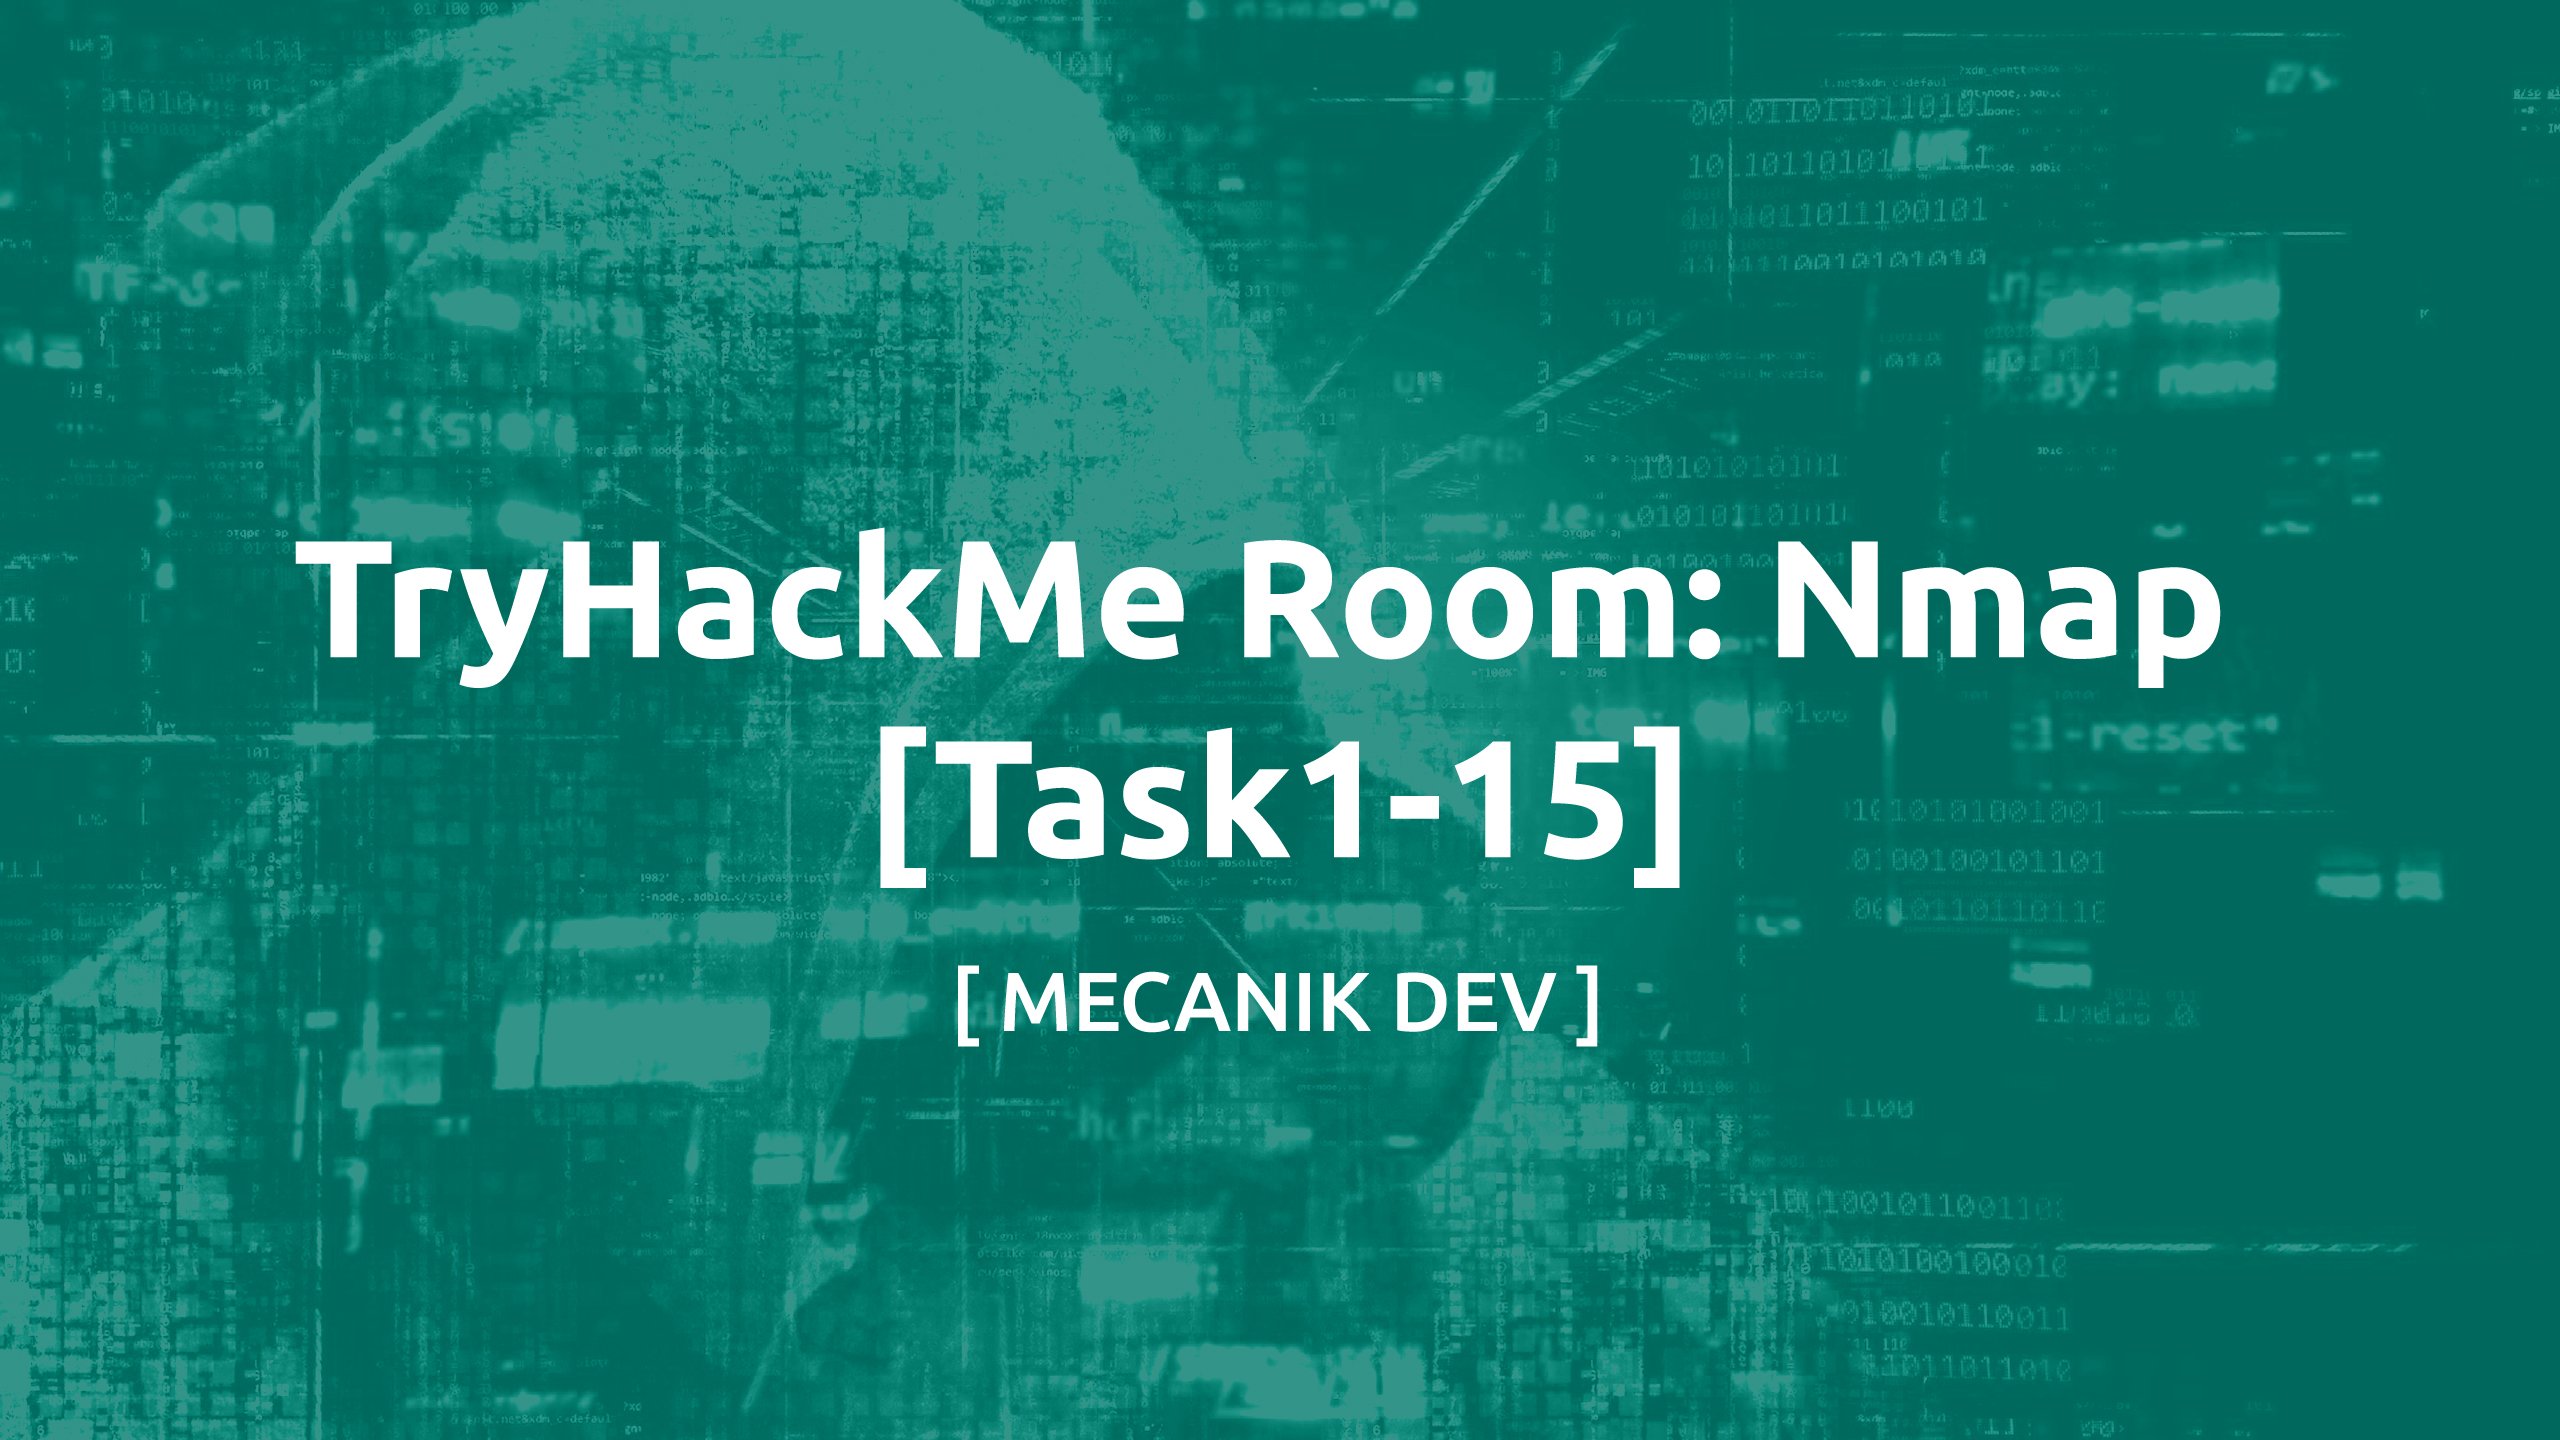 TryHackMe Room: Nmap [Task1-15]